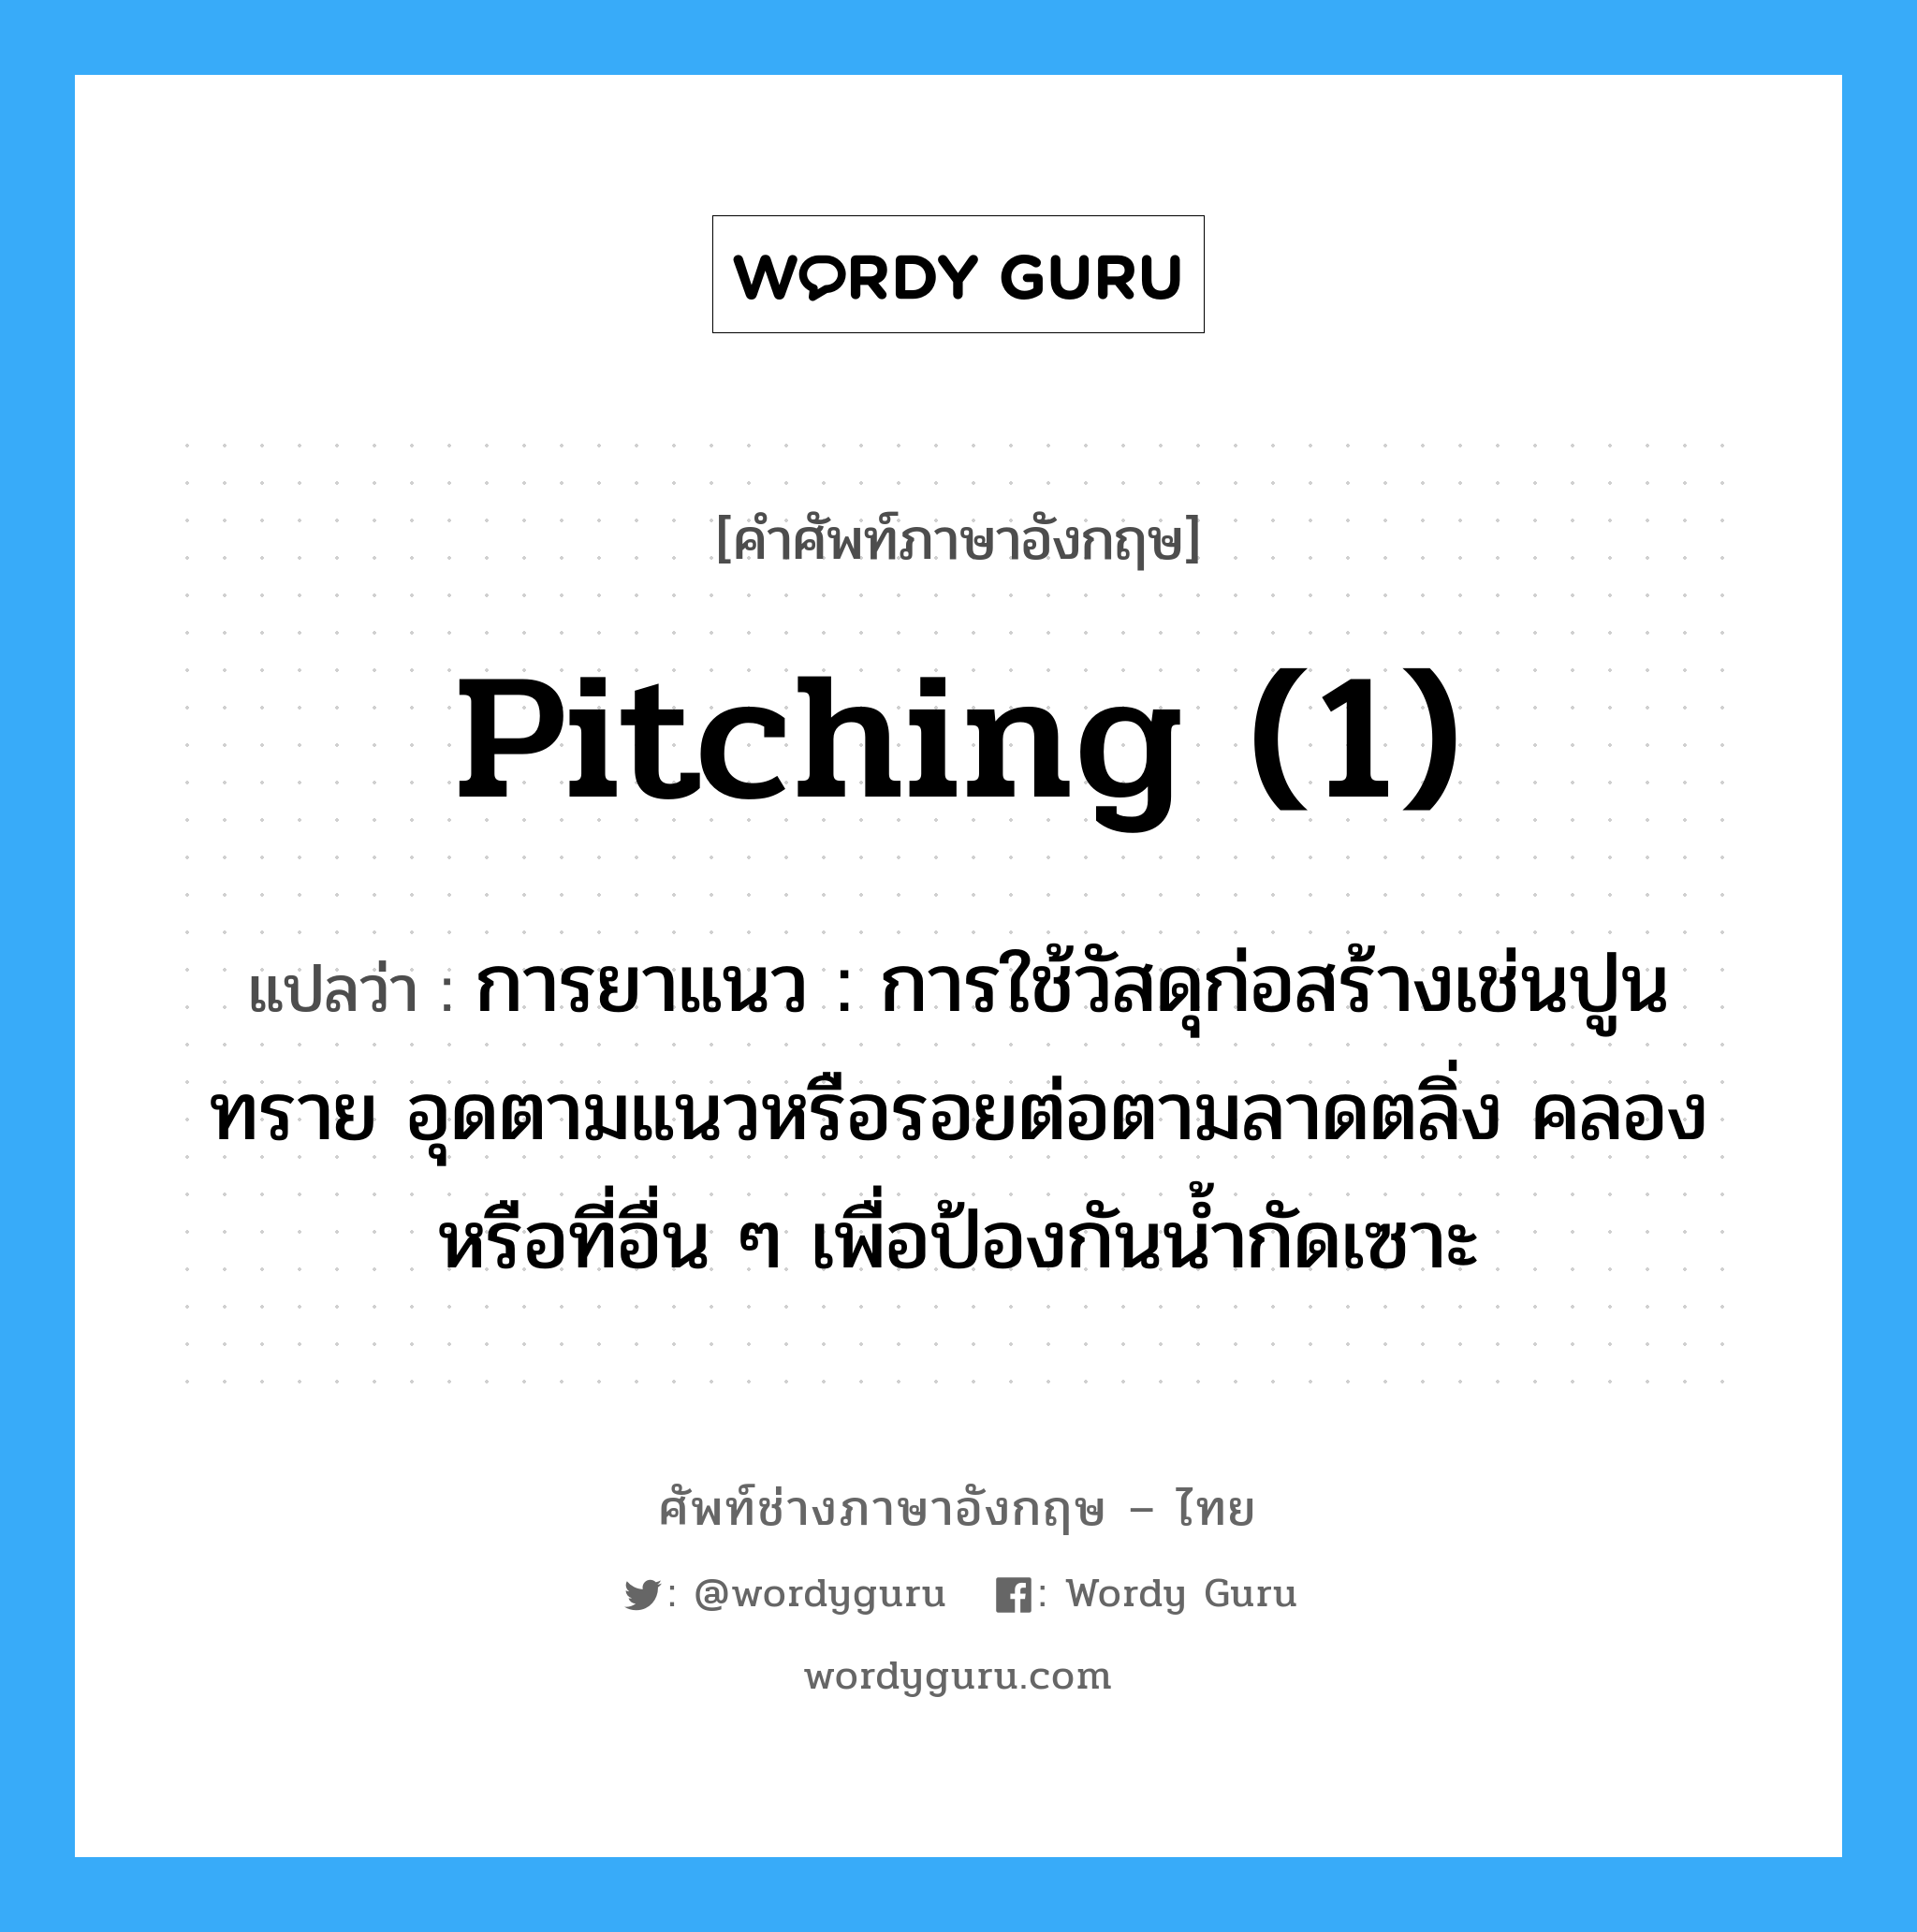 pitching (1) แปลว่า?, คำศัพท์ช่างภาษาอังกฤษ - ไทย pitching (1) คำศัพท์ภาษาอังกฤษ pitching (1) แปลว่า การยาแนว : การใช้วัสดุก่อสร้างเช่นปูนทราย อุดตามแนวหรือรอยต่อตามลาดตลิ่ง คลองหรือที่อื่น ๆ เพื่อป้องกันน้ำกัดเซาะ